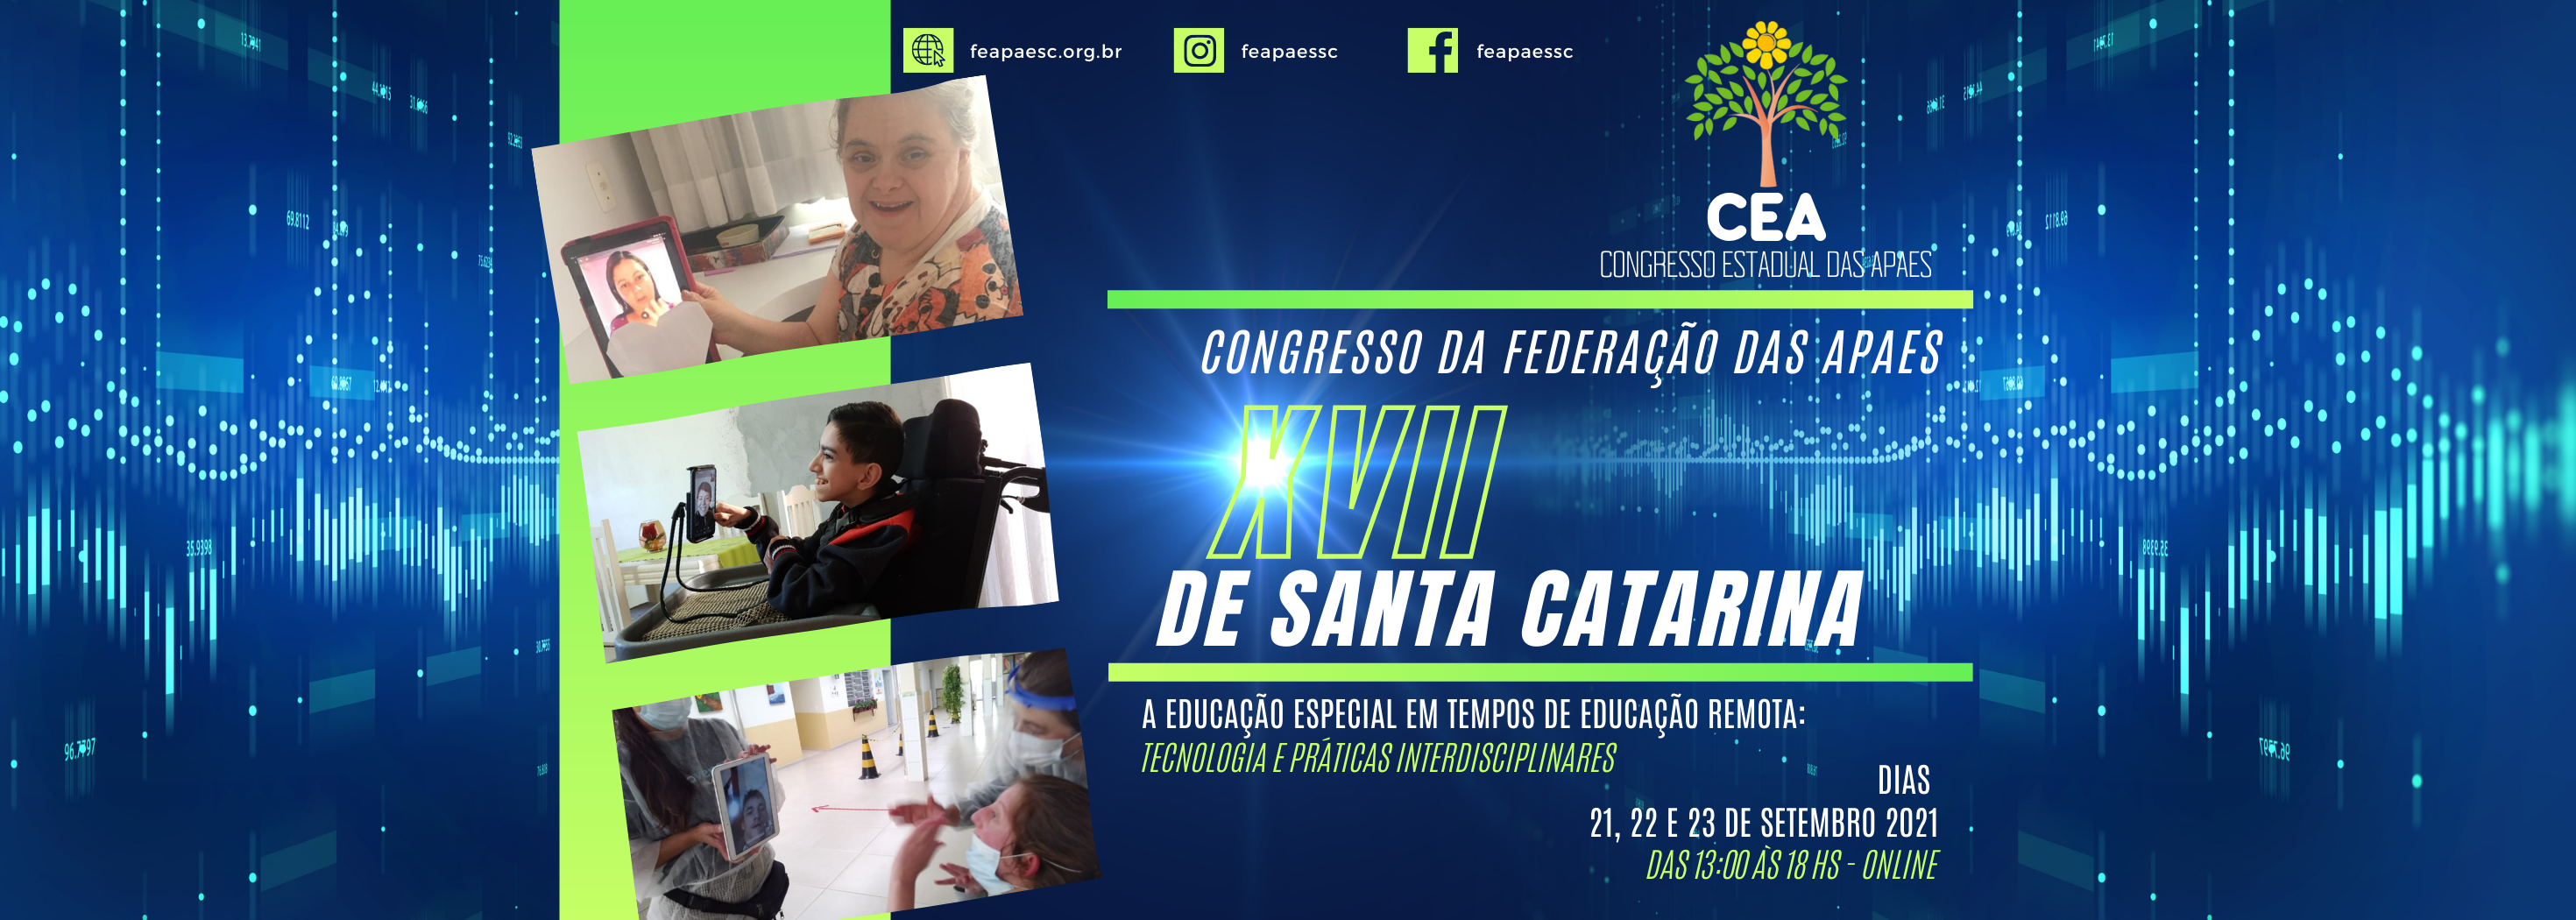 Fundo azul, foto de pessoas em frente a tablets e computadores e o texto - Congresso da Federação das APAEs de Santa Catarina